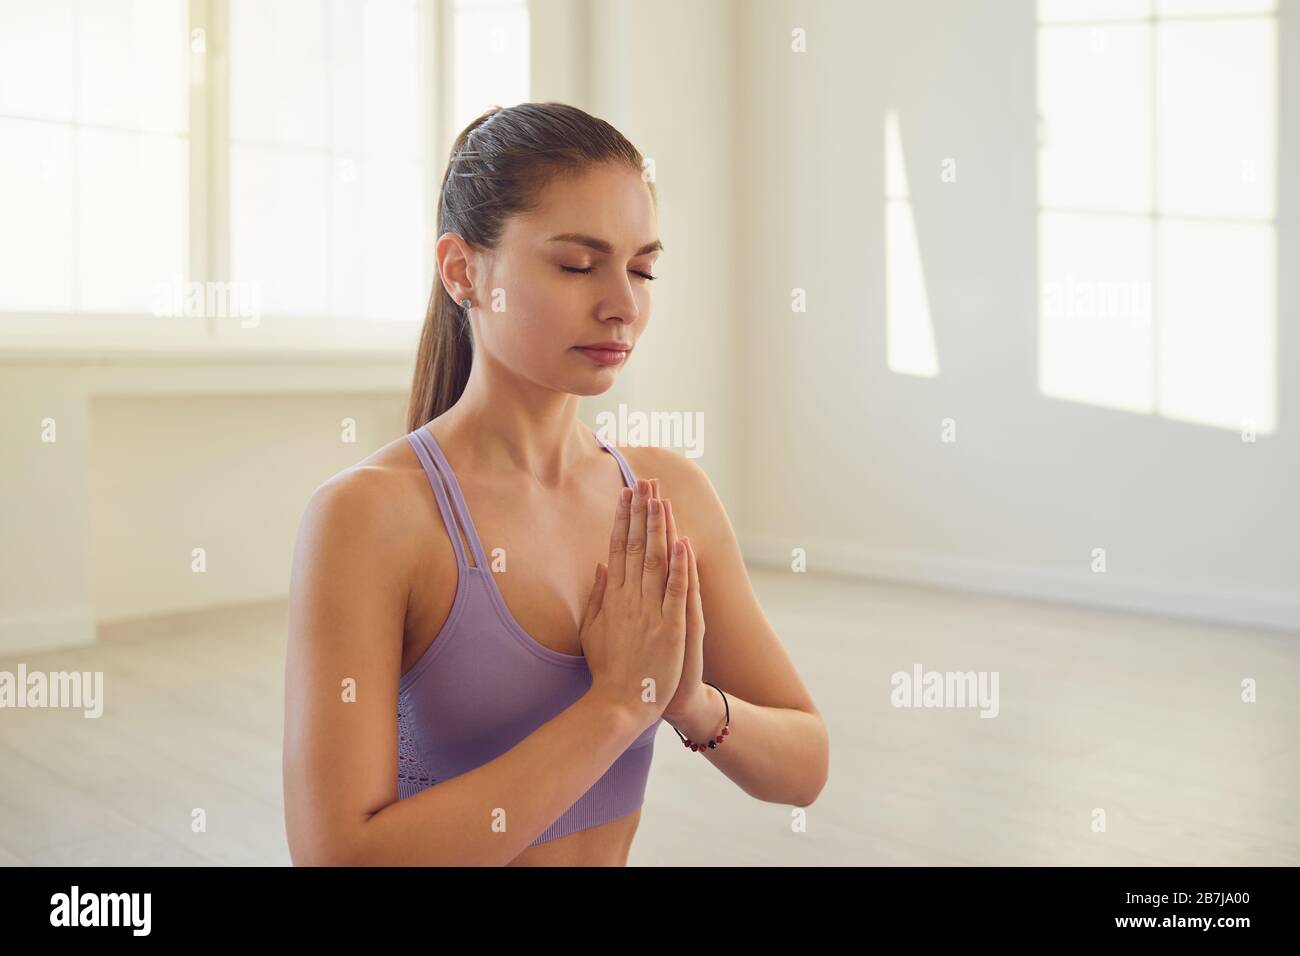 Junge Frau, die Yoga macht. Schöne Mädchen, die sich in der Ruhe befinden, entspannen konzentrierte Balance im Zimmer. Stockfoto